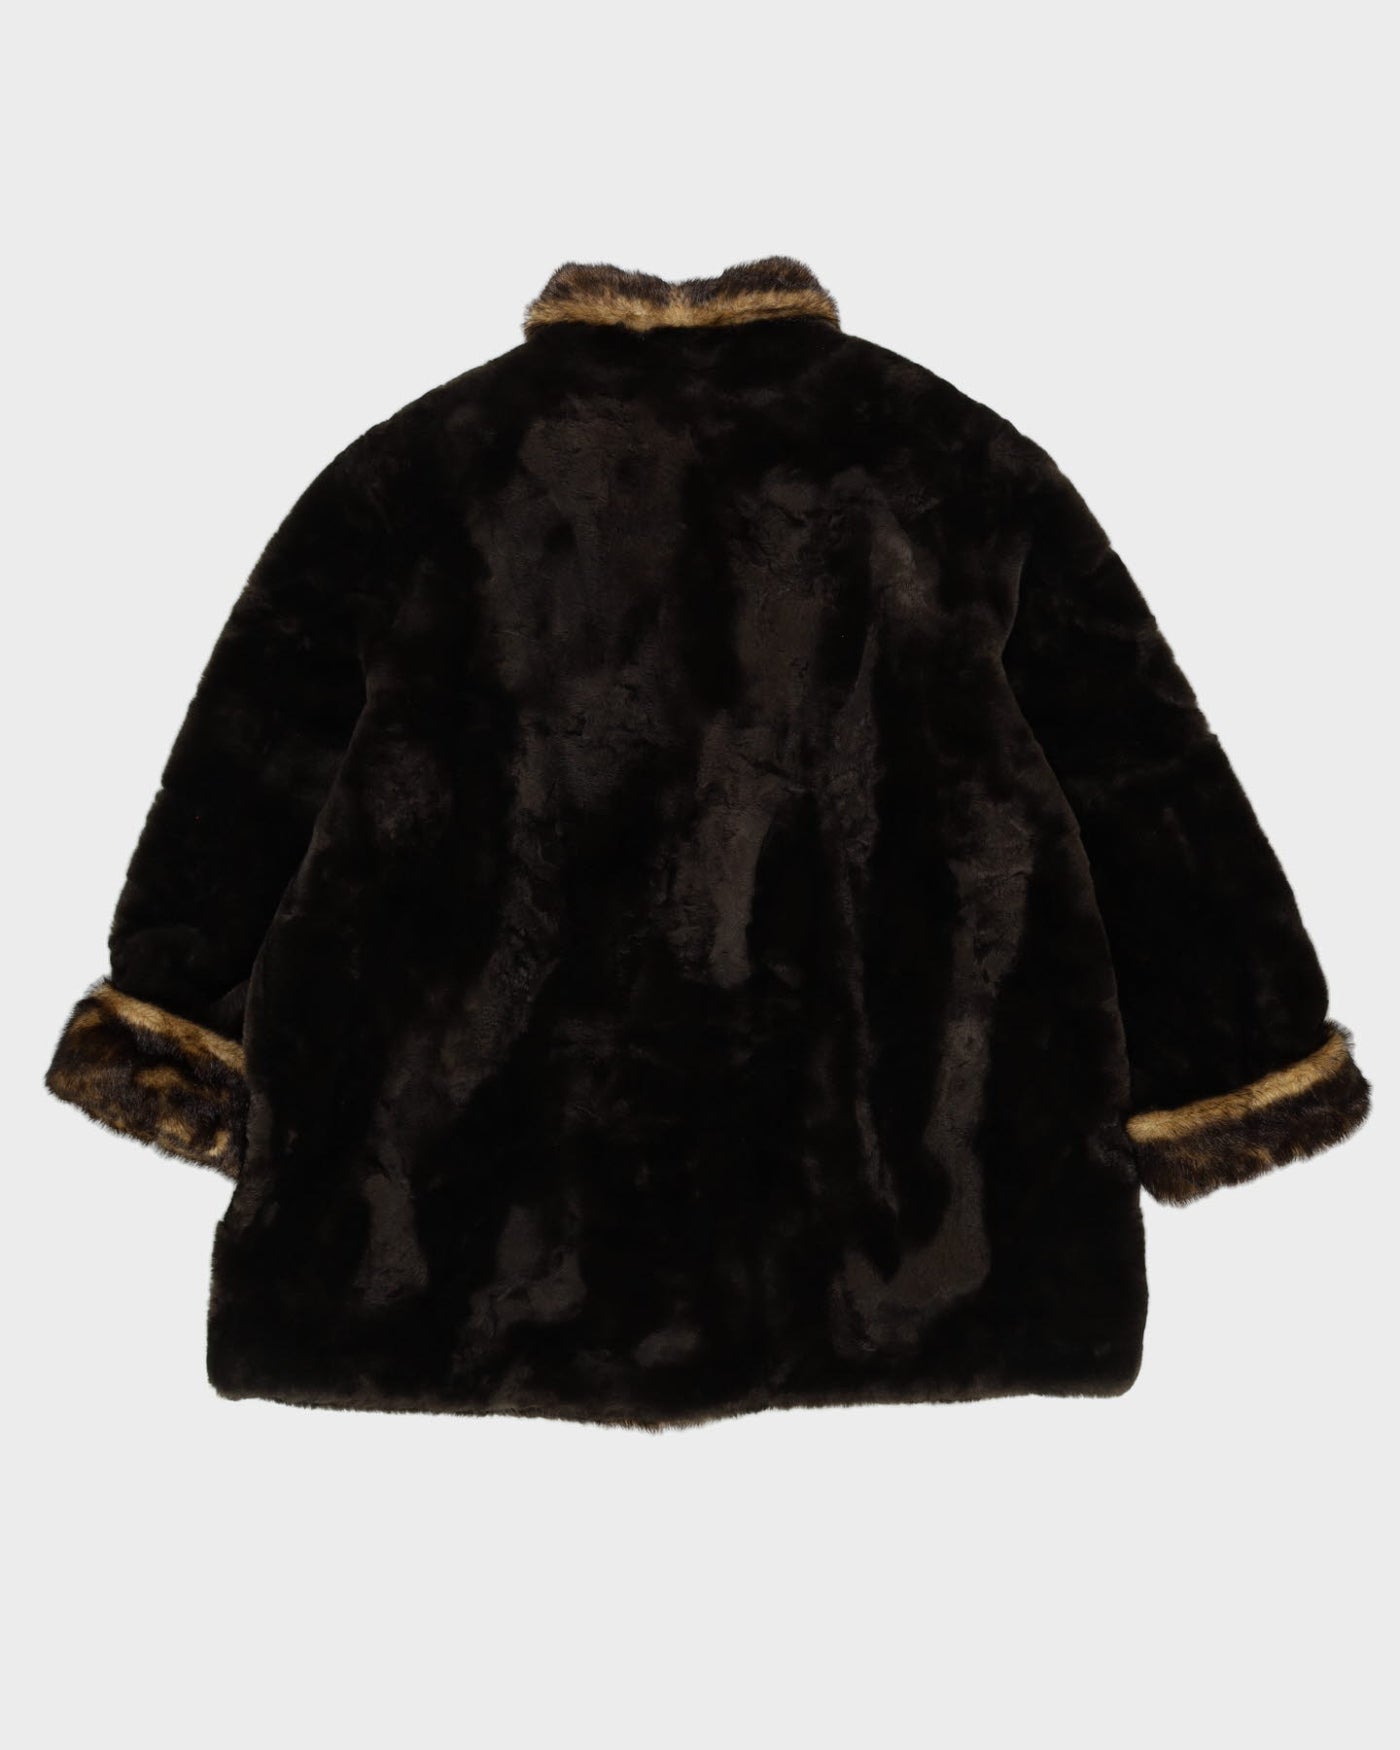 Brown Faux Fur Jacket - XL